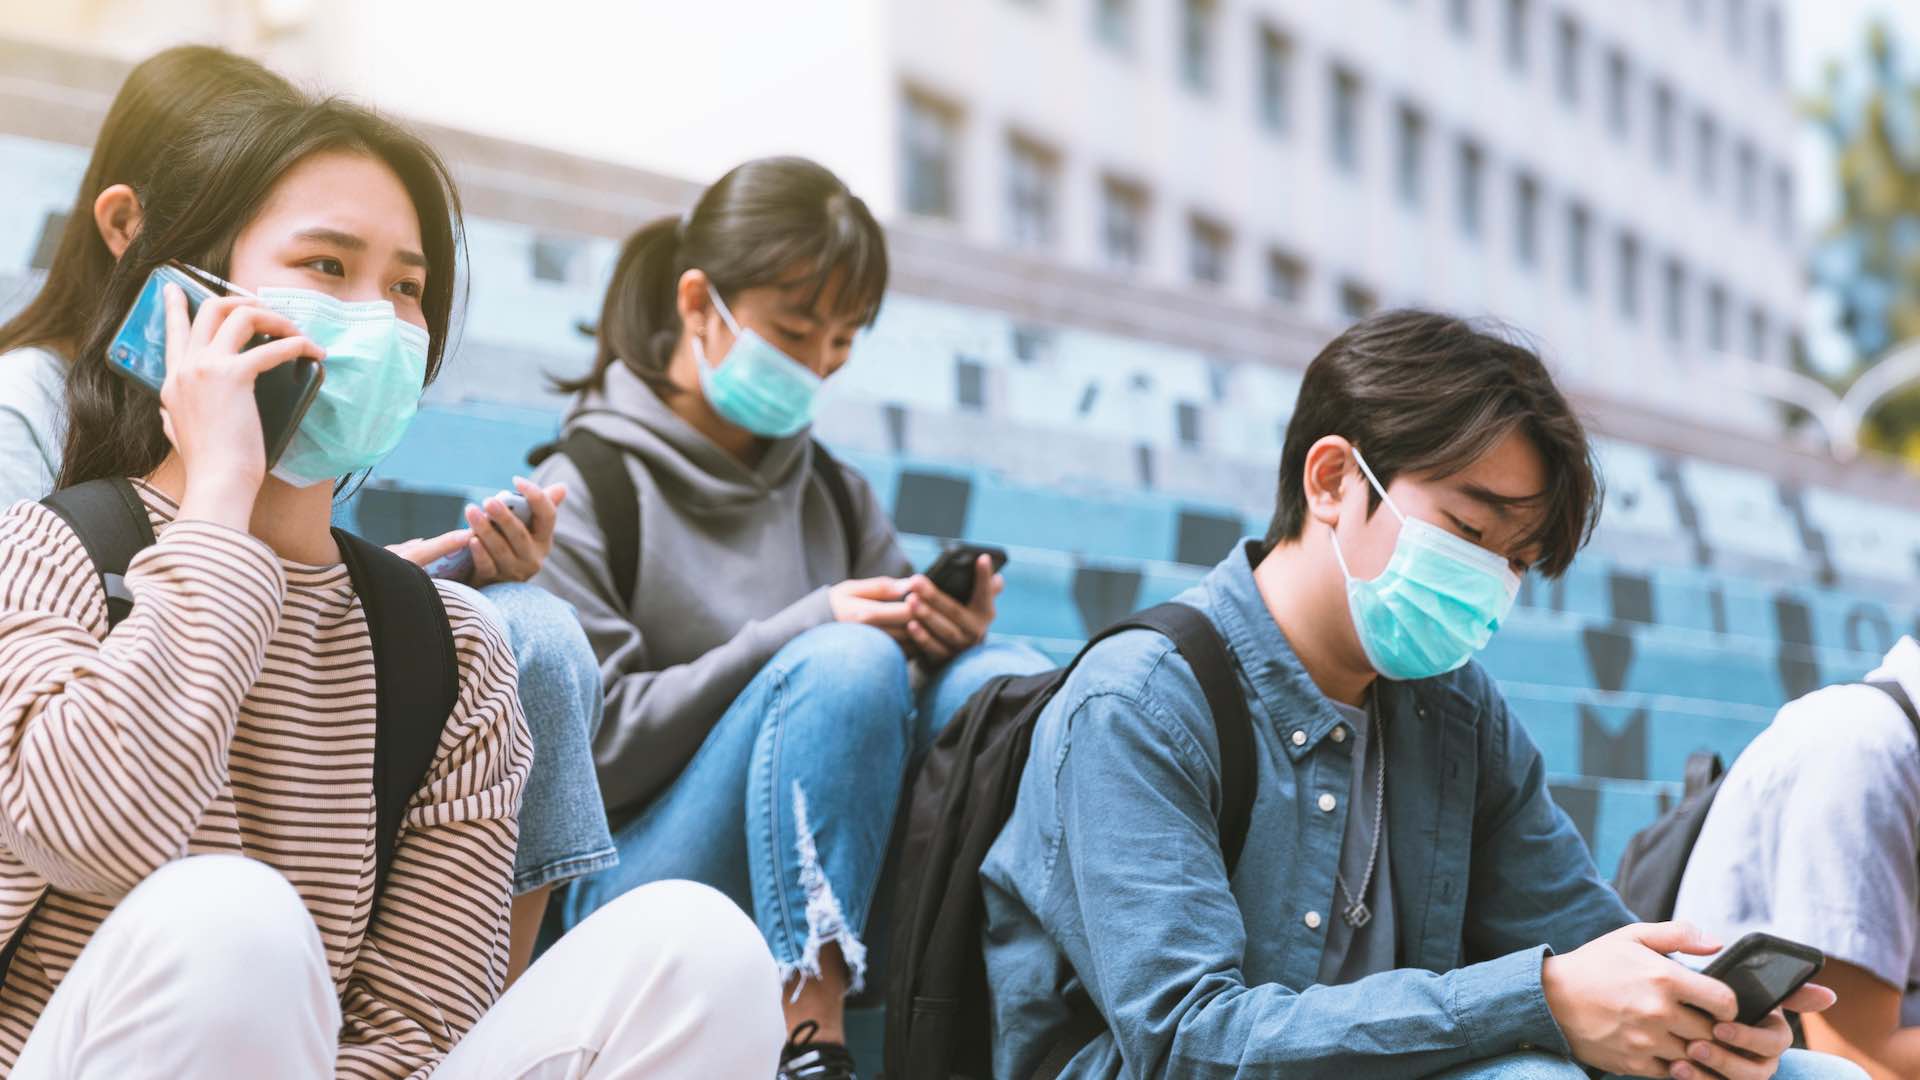 डब्ल्यूएचओ चीन में श्वसन संबंधी बीमारियों में वृद्धि की जांच कर रहा है